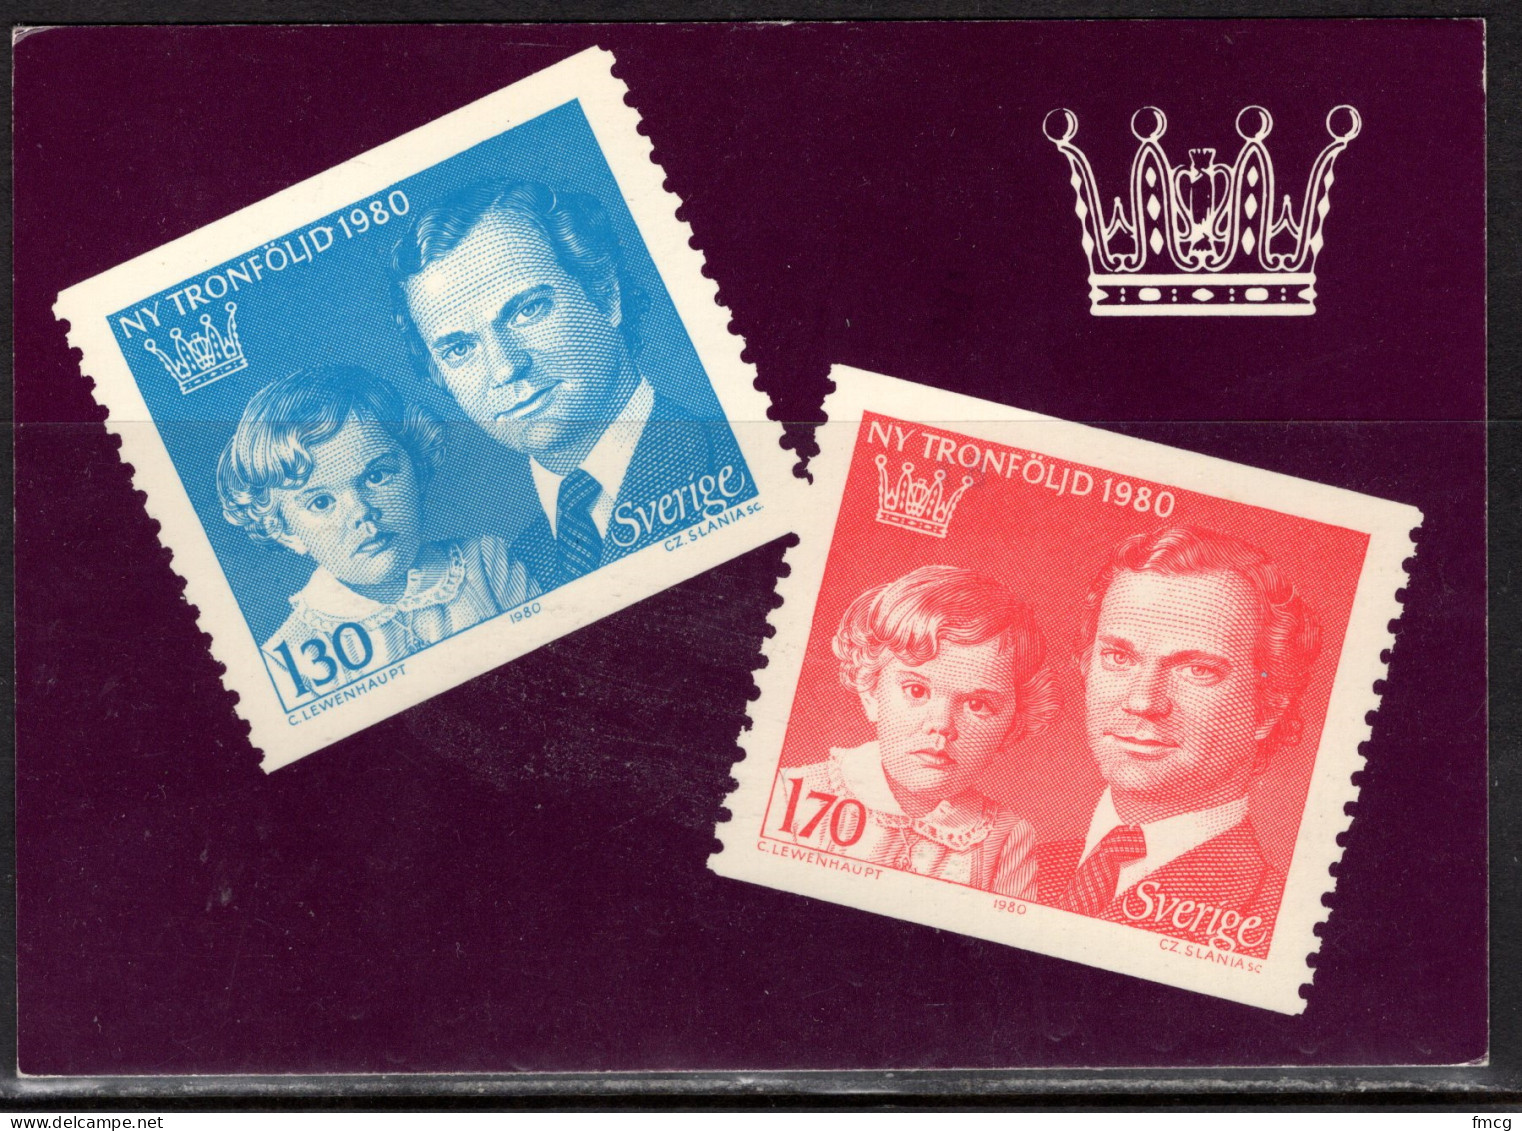 1980 Sweden Stamps, London, Mailed From Sweden - Briefmarken (Abbildungen)